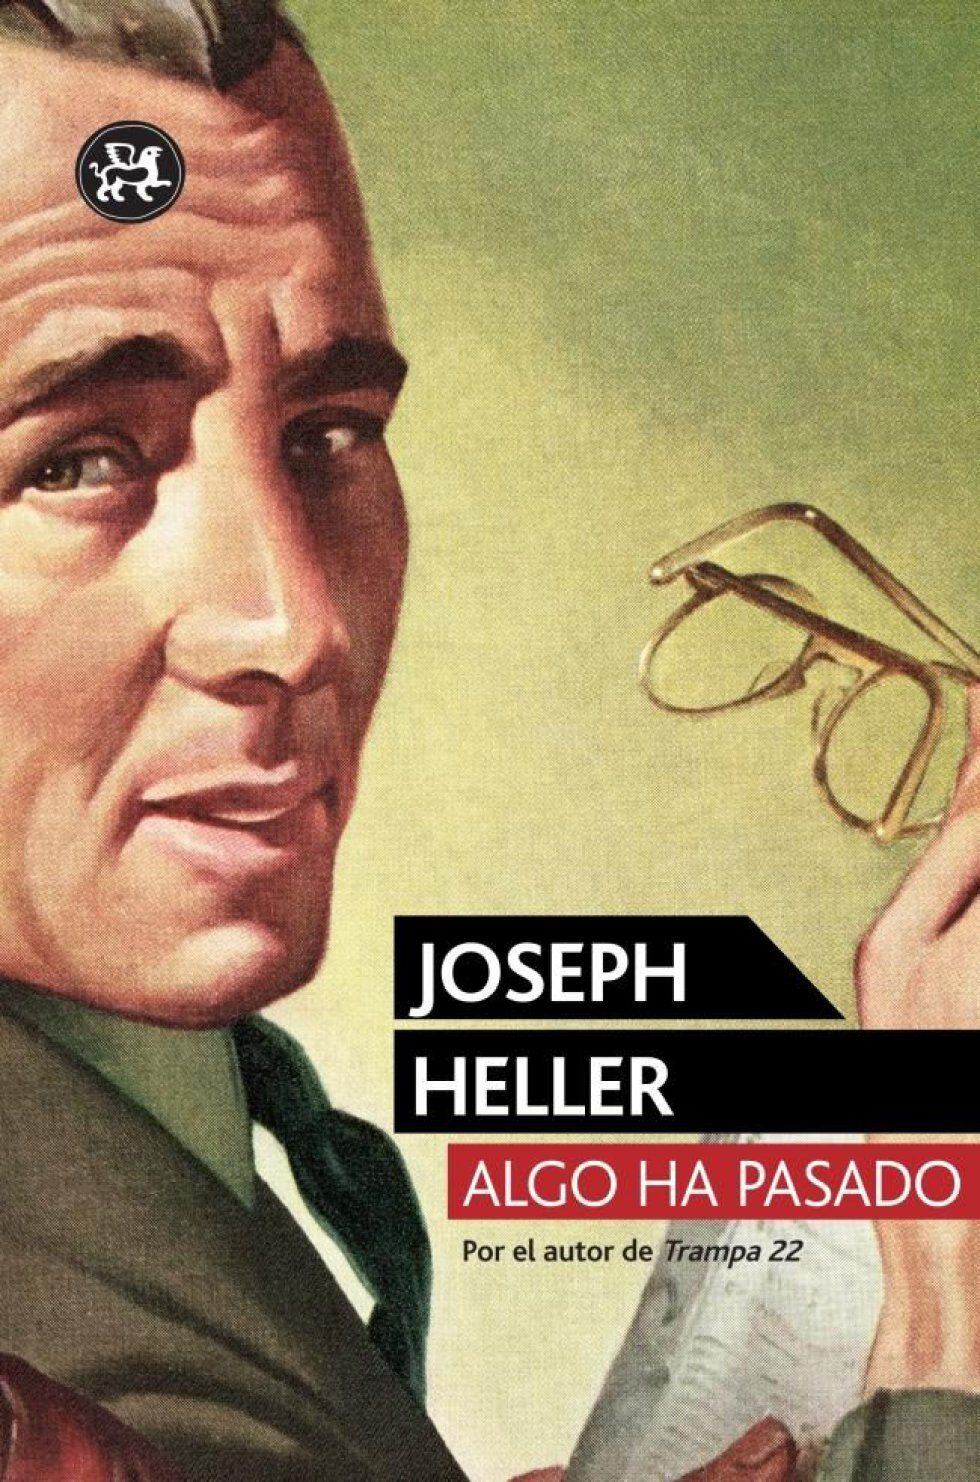 Portada del libro 'Algo ha pasado', de Joseph Heller. 